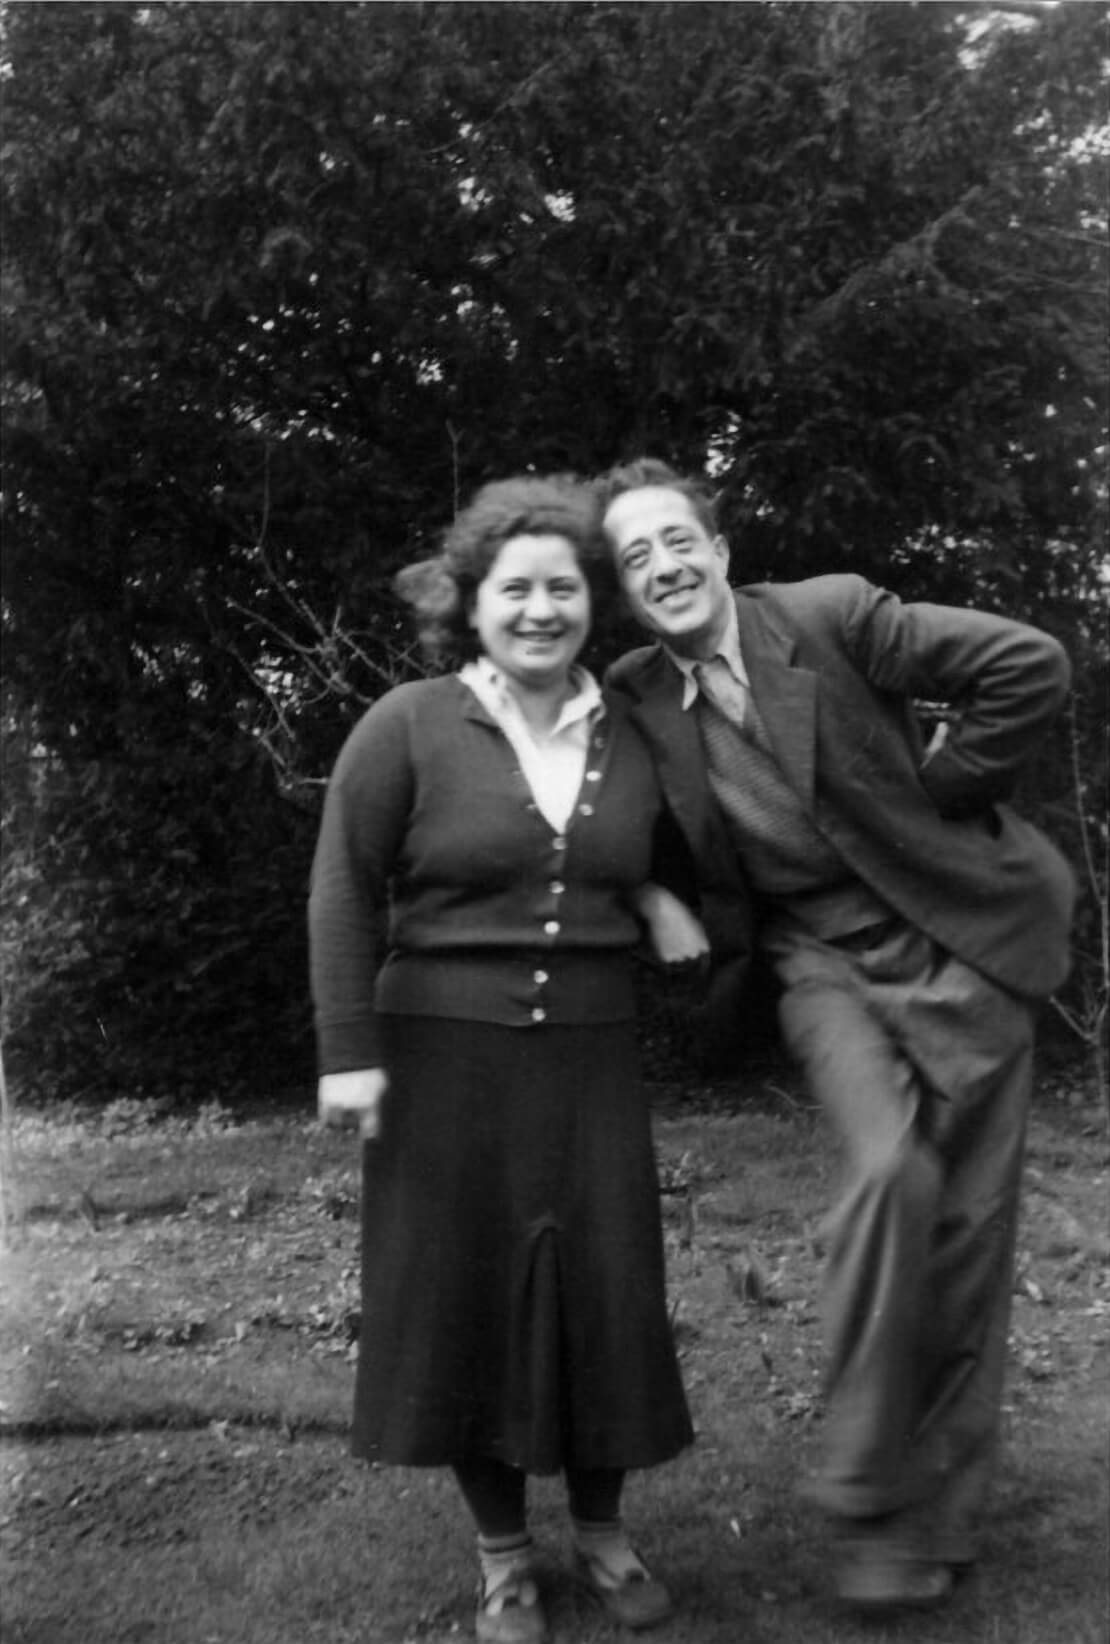 Ilsa und Arturo in Middle Lodge, 1947-1957, Archiv Uli Rushby-Smith, London 